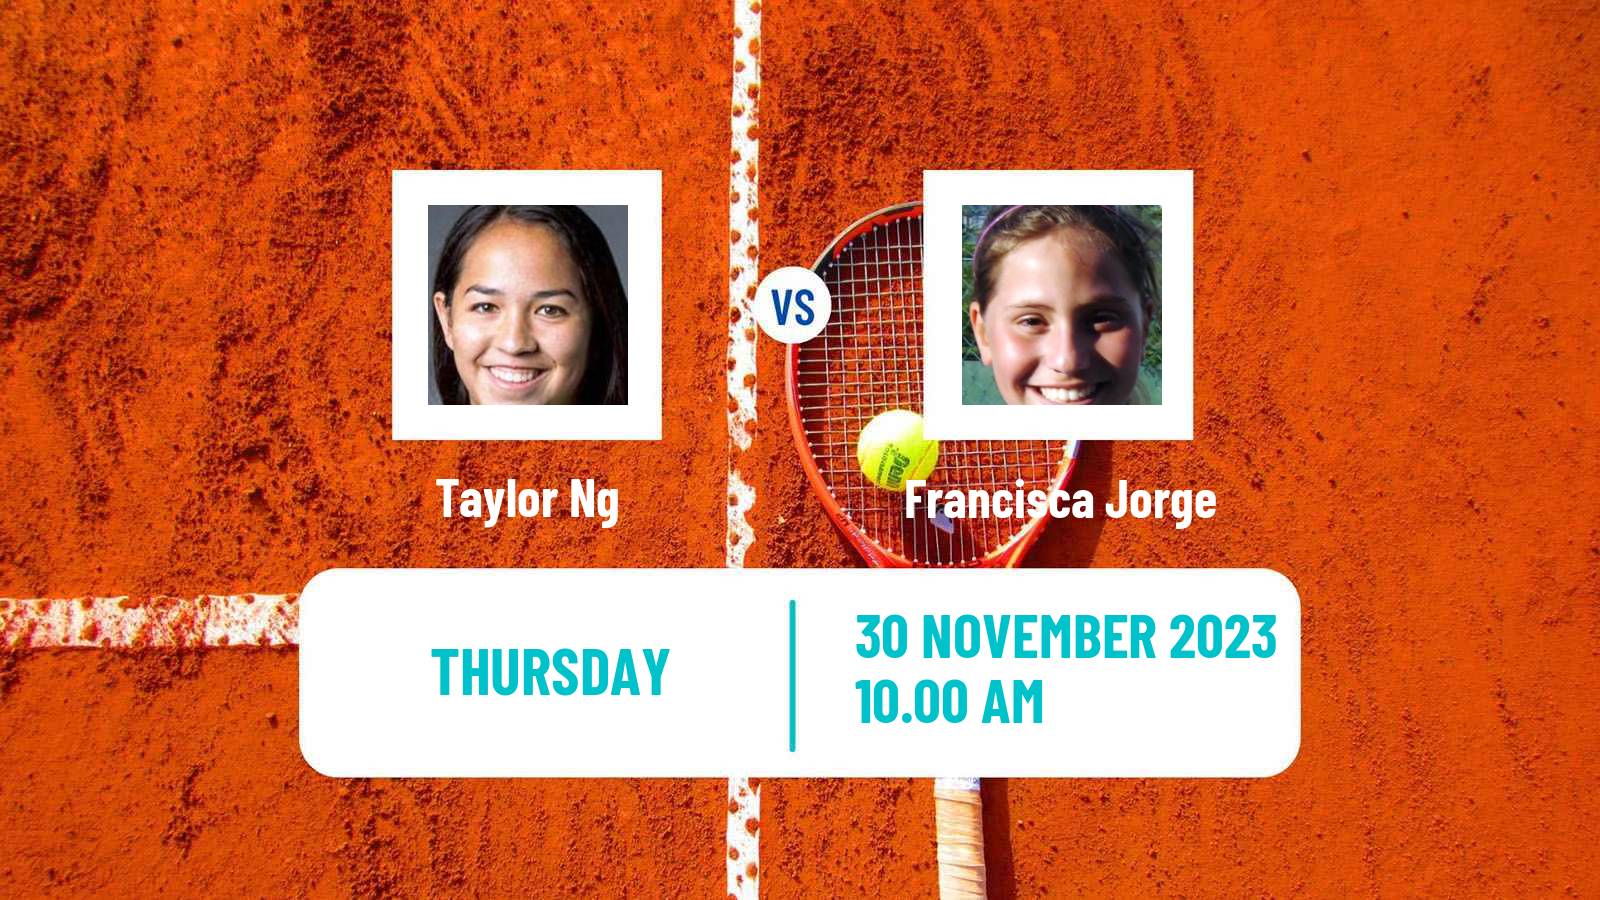 Tennis ITF W40 Veracruz Women Taylor Ng - Francisca Jorge